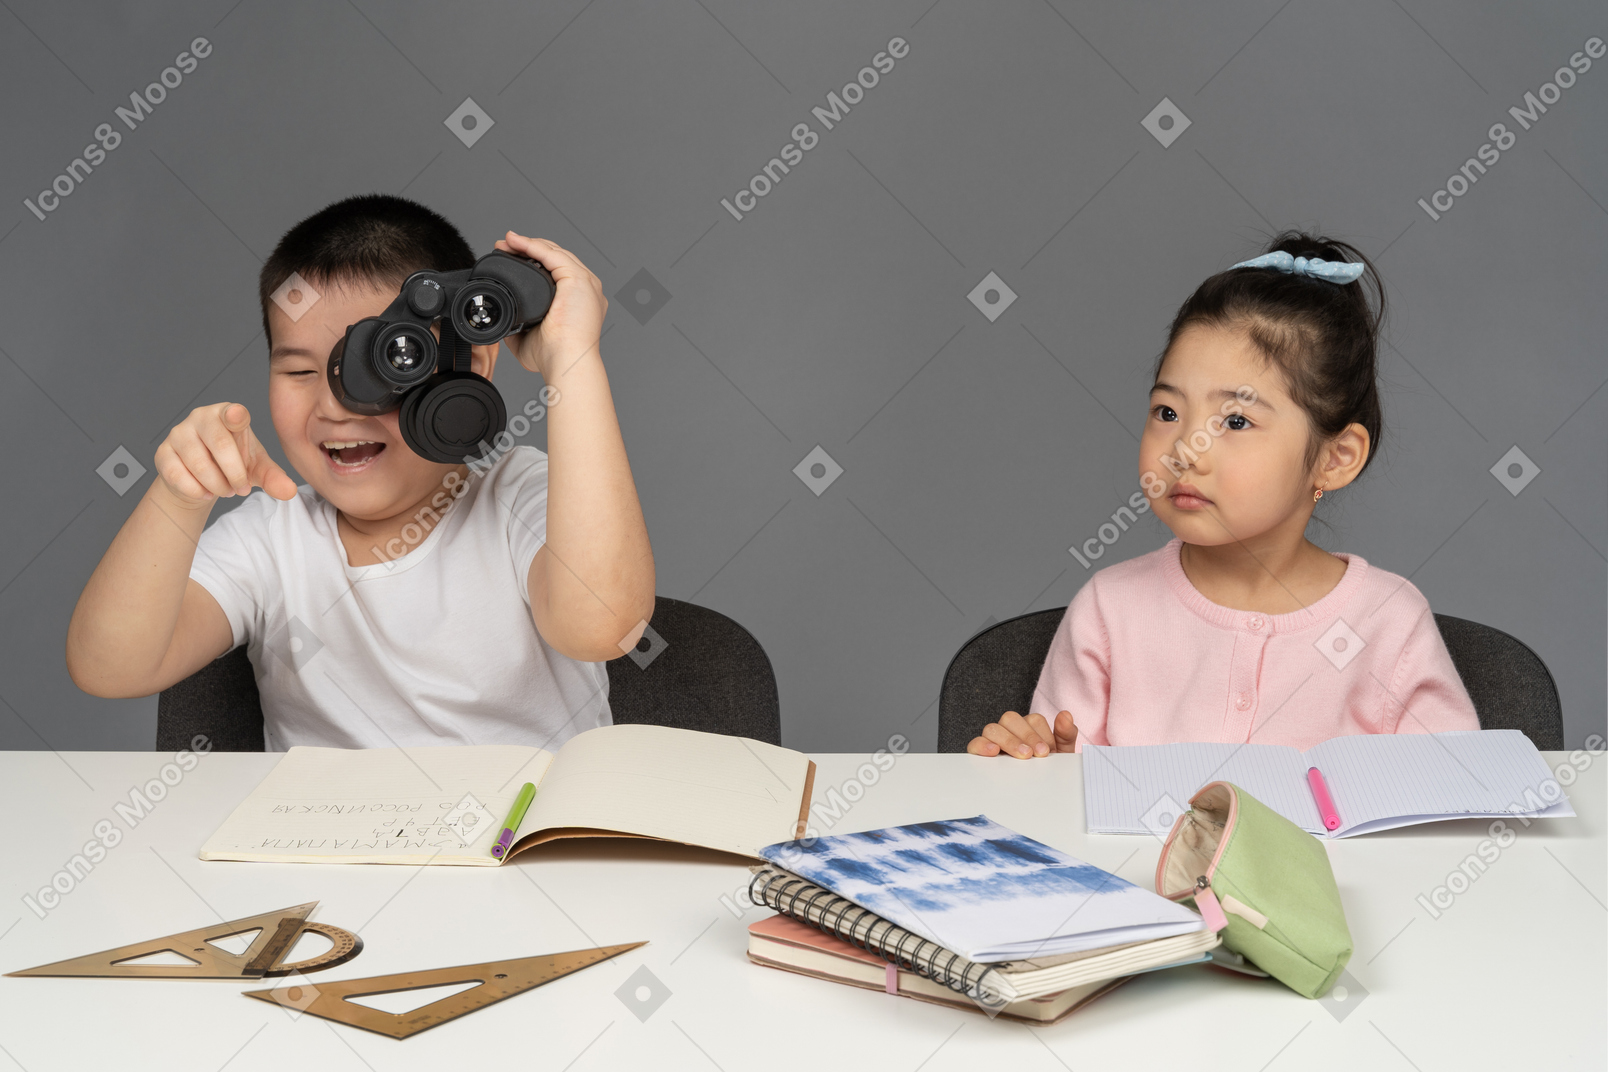 小さな女の子の横にある双眼鏡で見て笑っている男の子